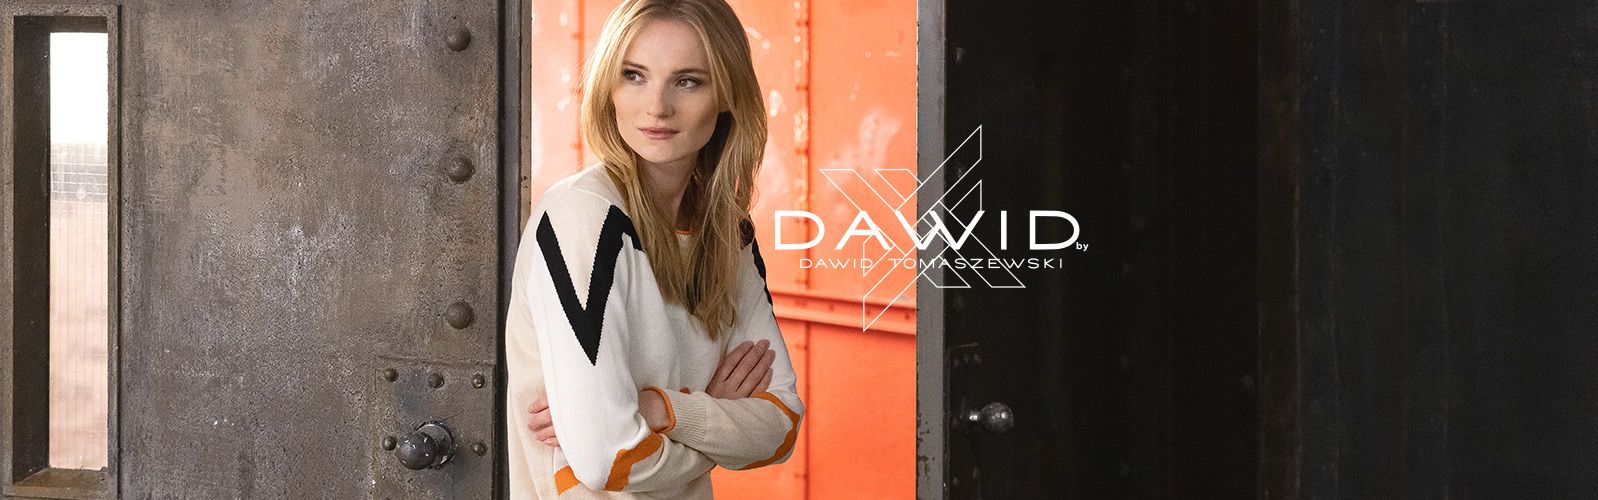 DAWID by Dawid Tomaszewski Mode